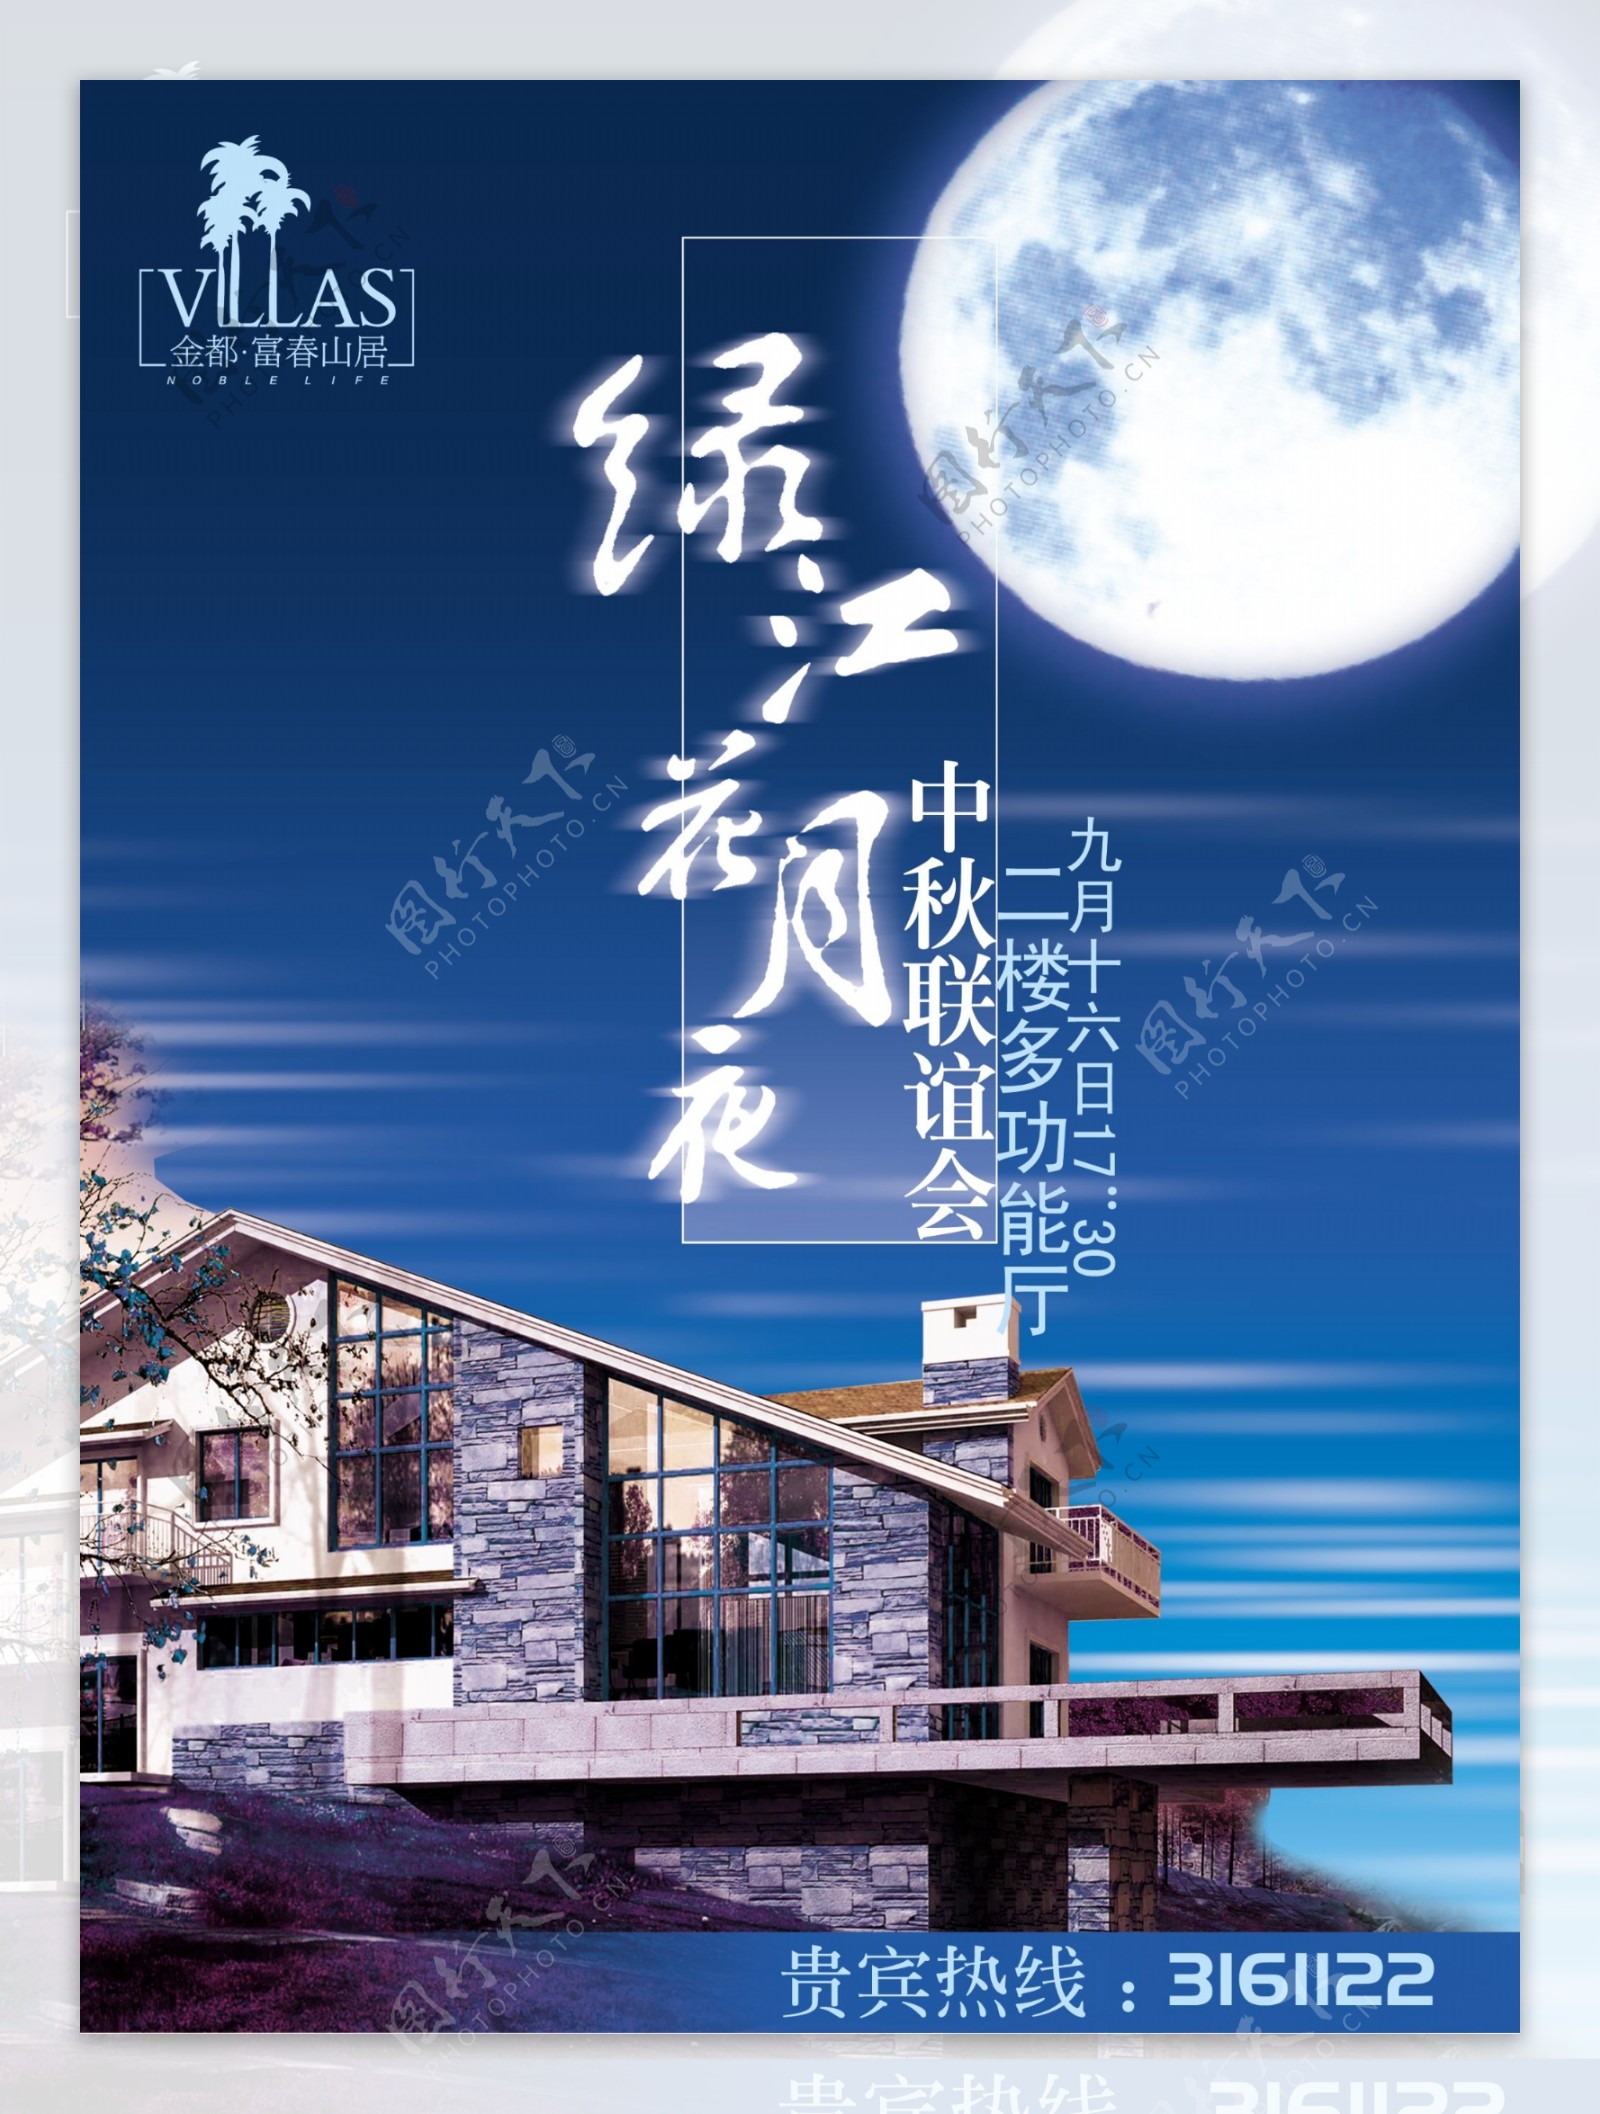 中秋节活动告示牌绿江花月夜图片